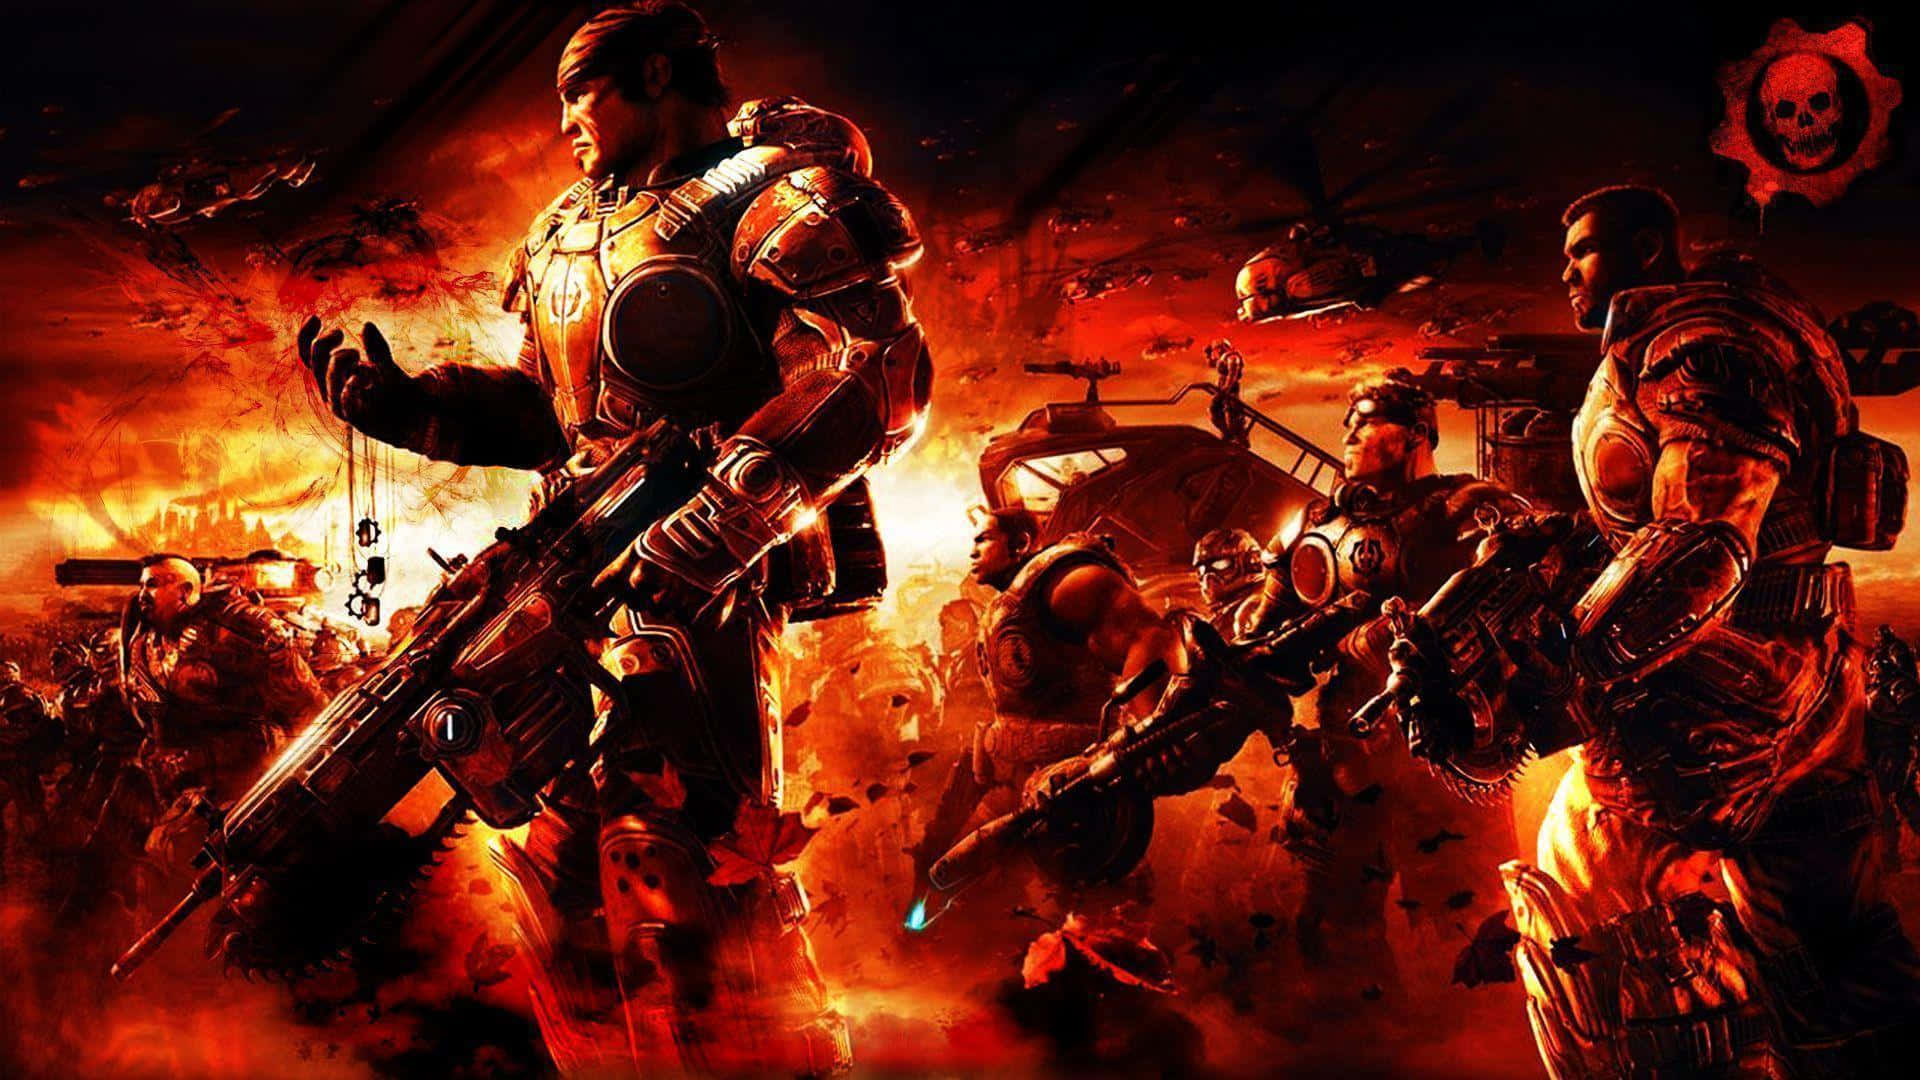 "Gears Of War 1 - Fight the Locust Horde" Wallpaper